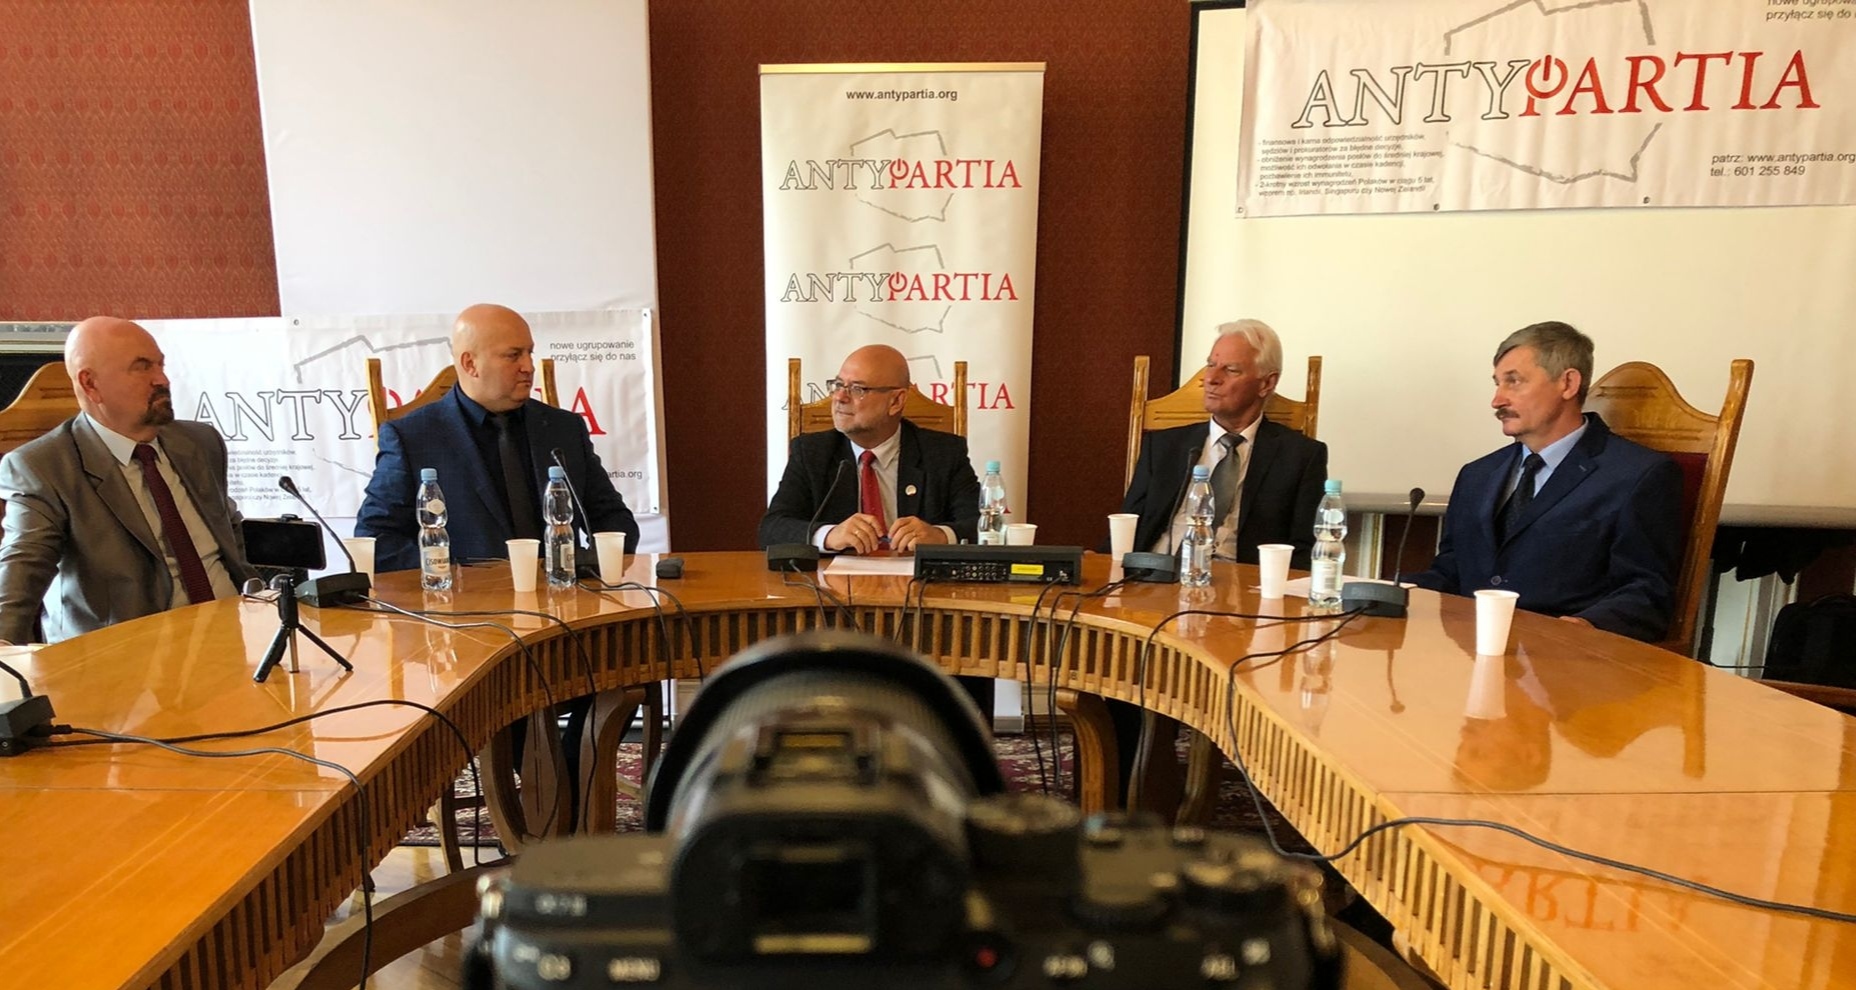 Antypartia trzecią siłą polityczną w Sejmie wg sondażu Social Changes – konferencja prasowa w pałacu Chodkiewiczów w Warszawie